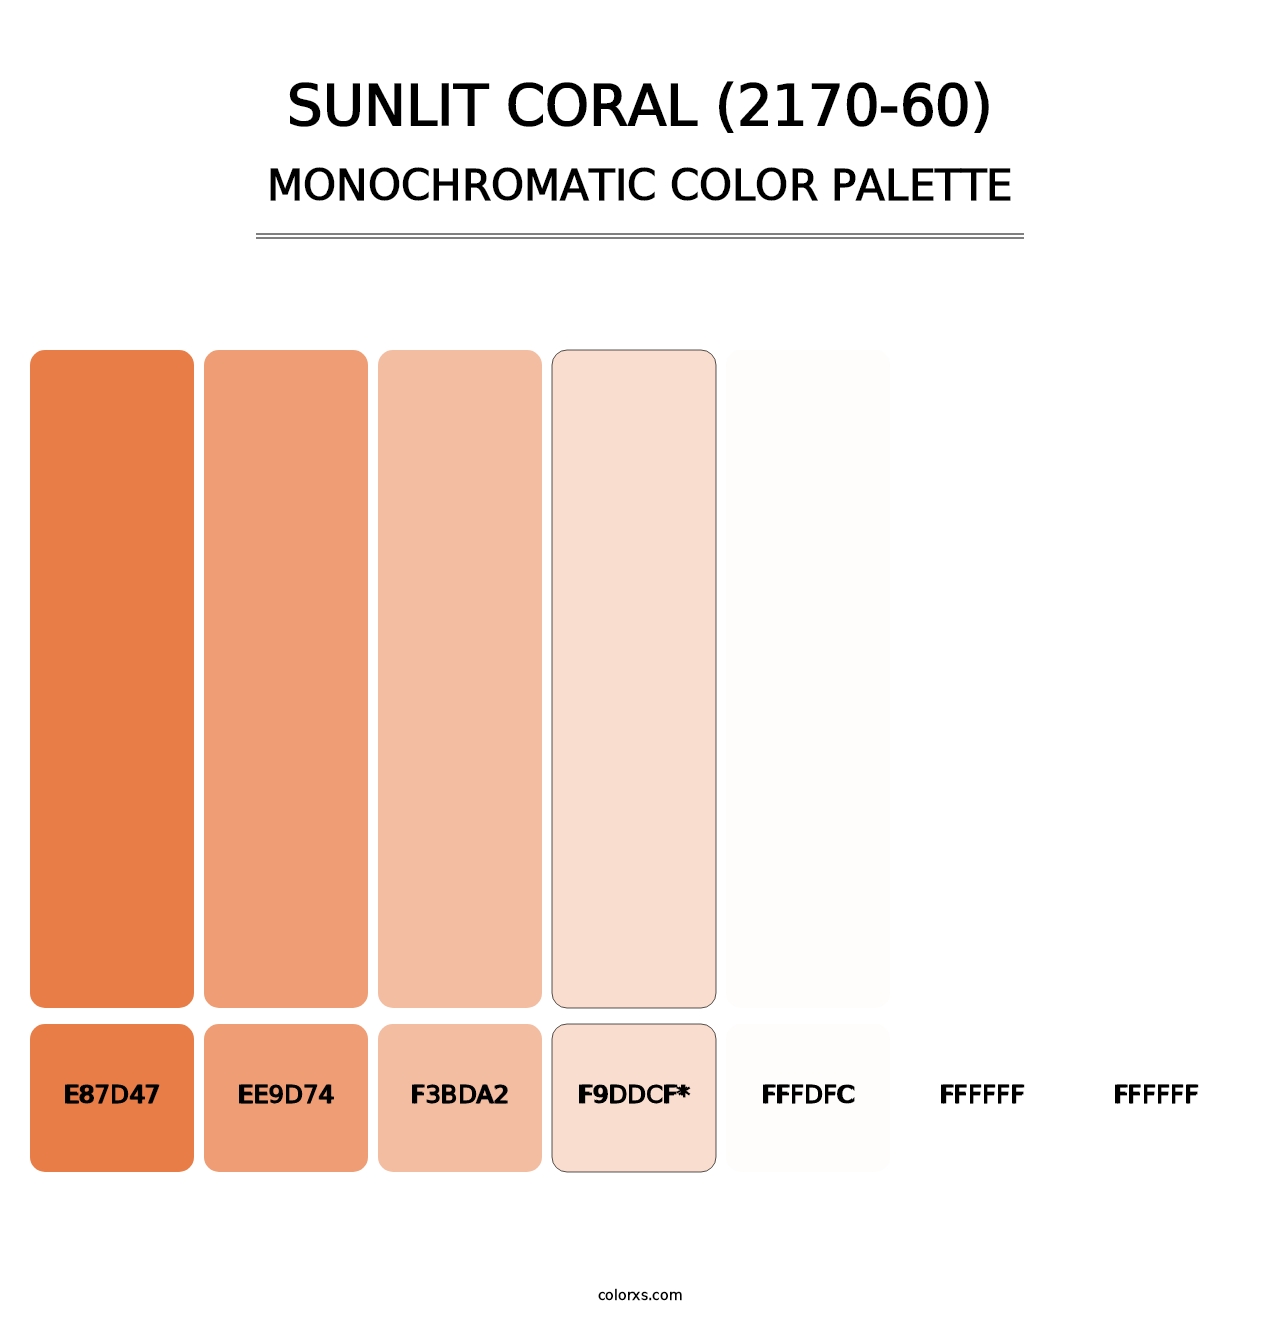 Sunlit Coral (2170-60) - Monochromatic Color Palette